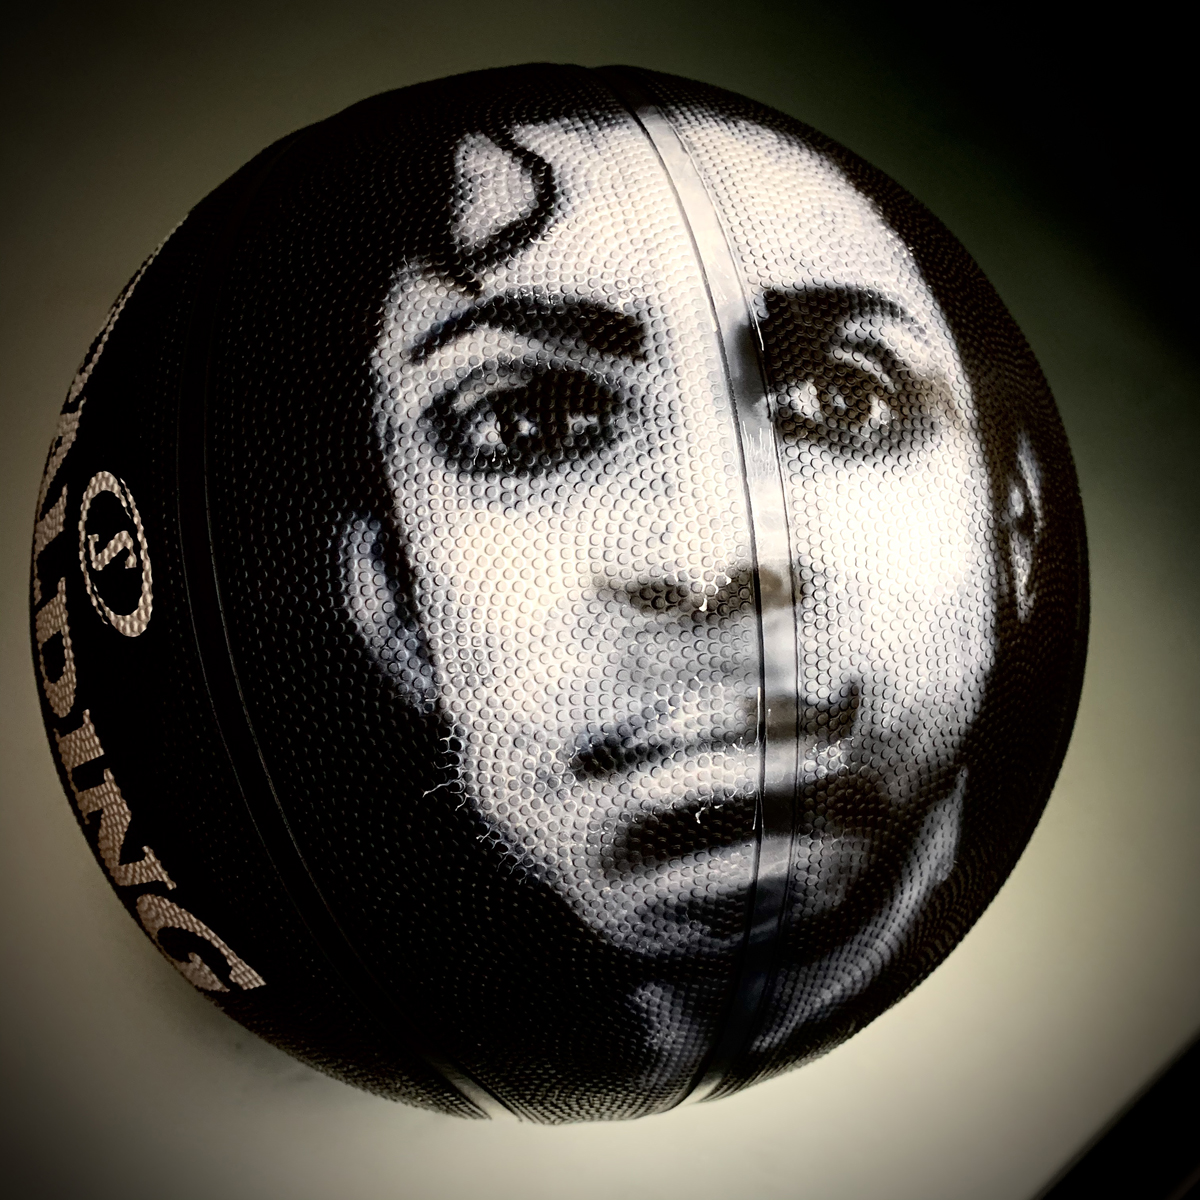 Prince on basketball